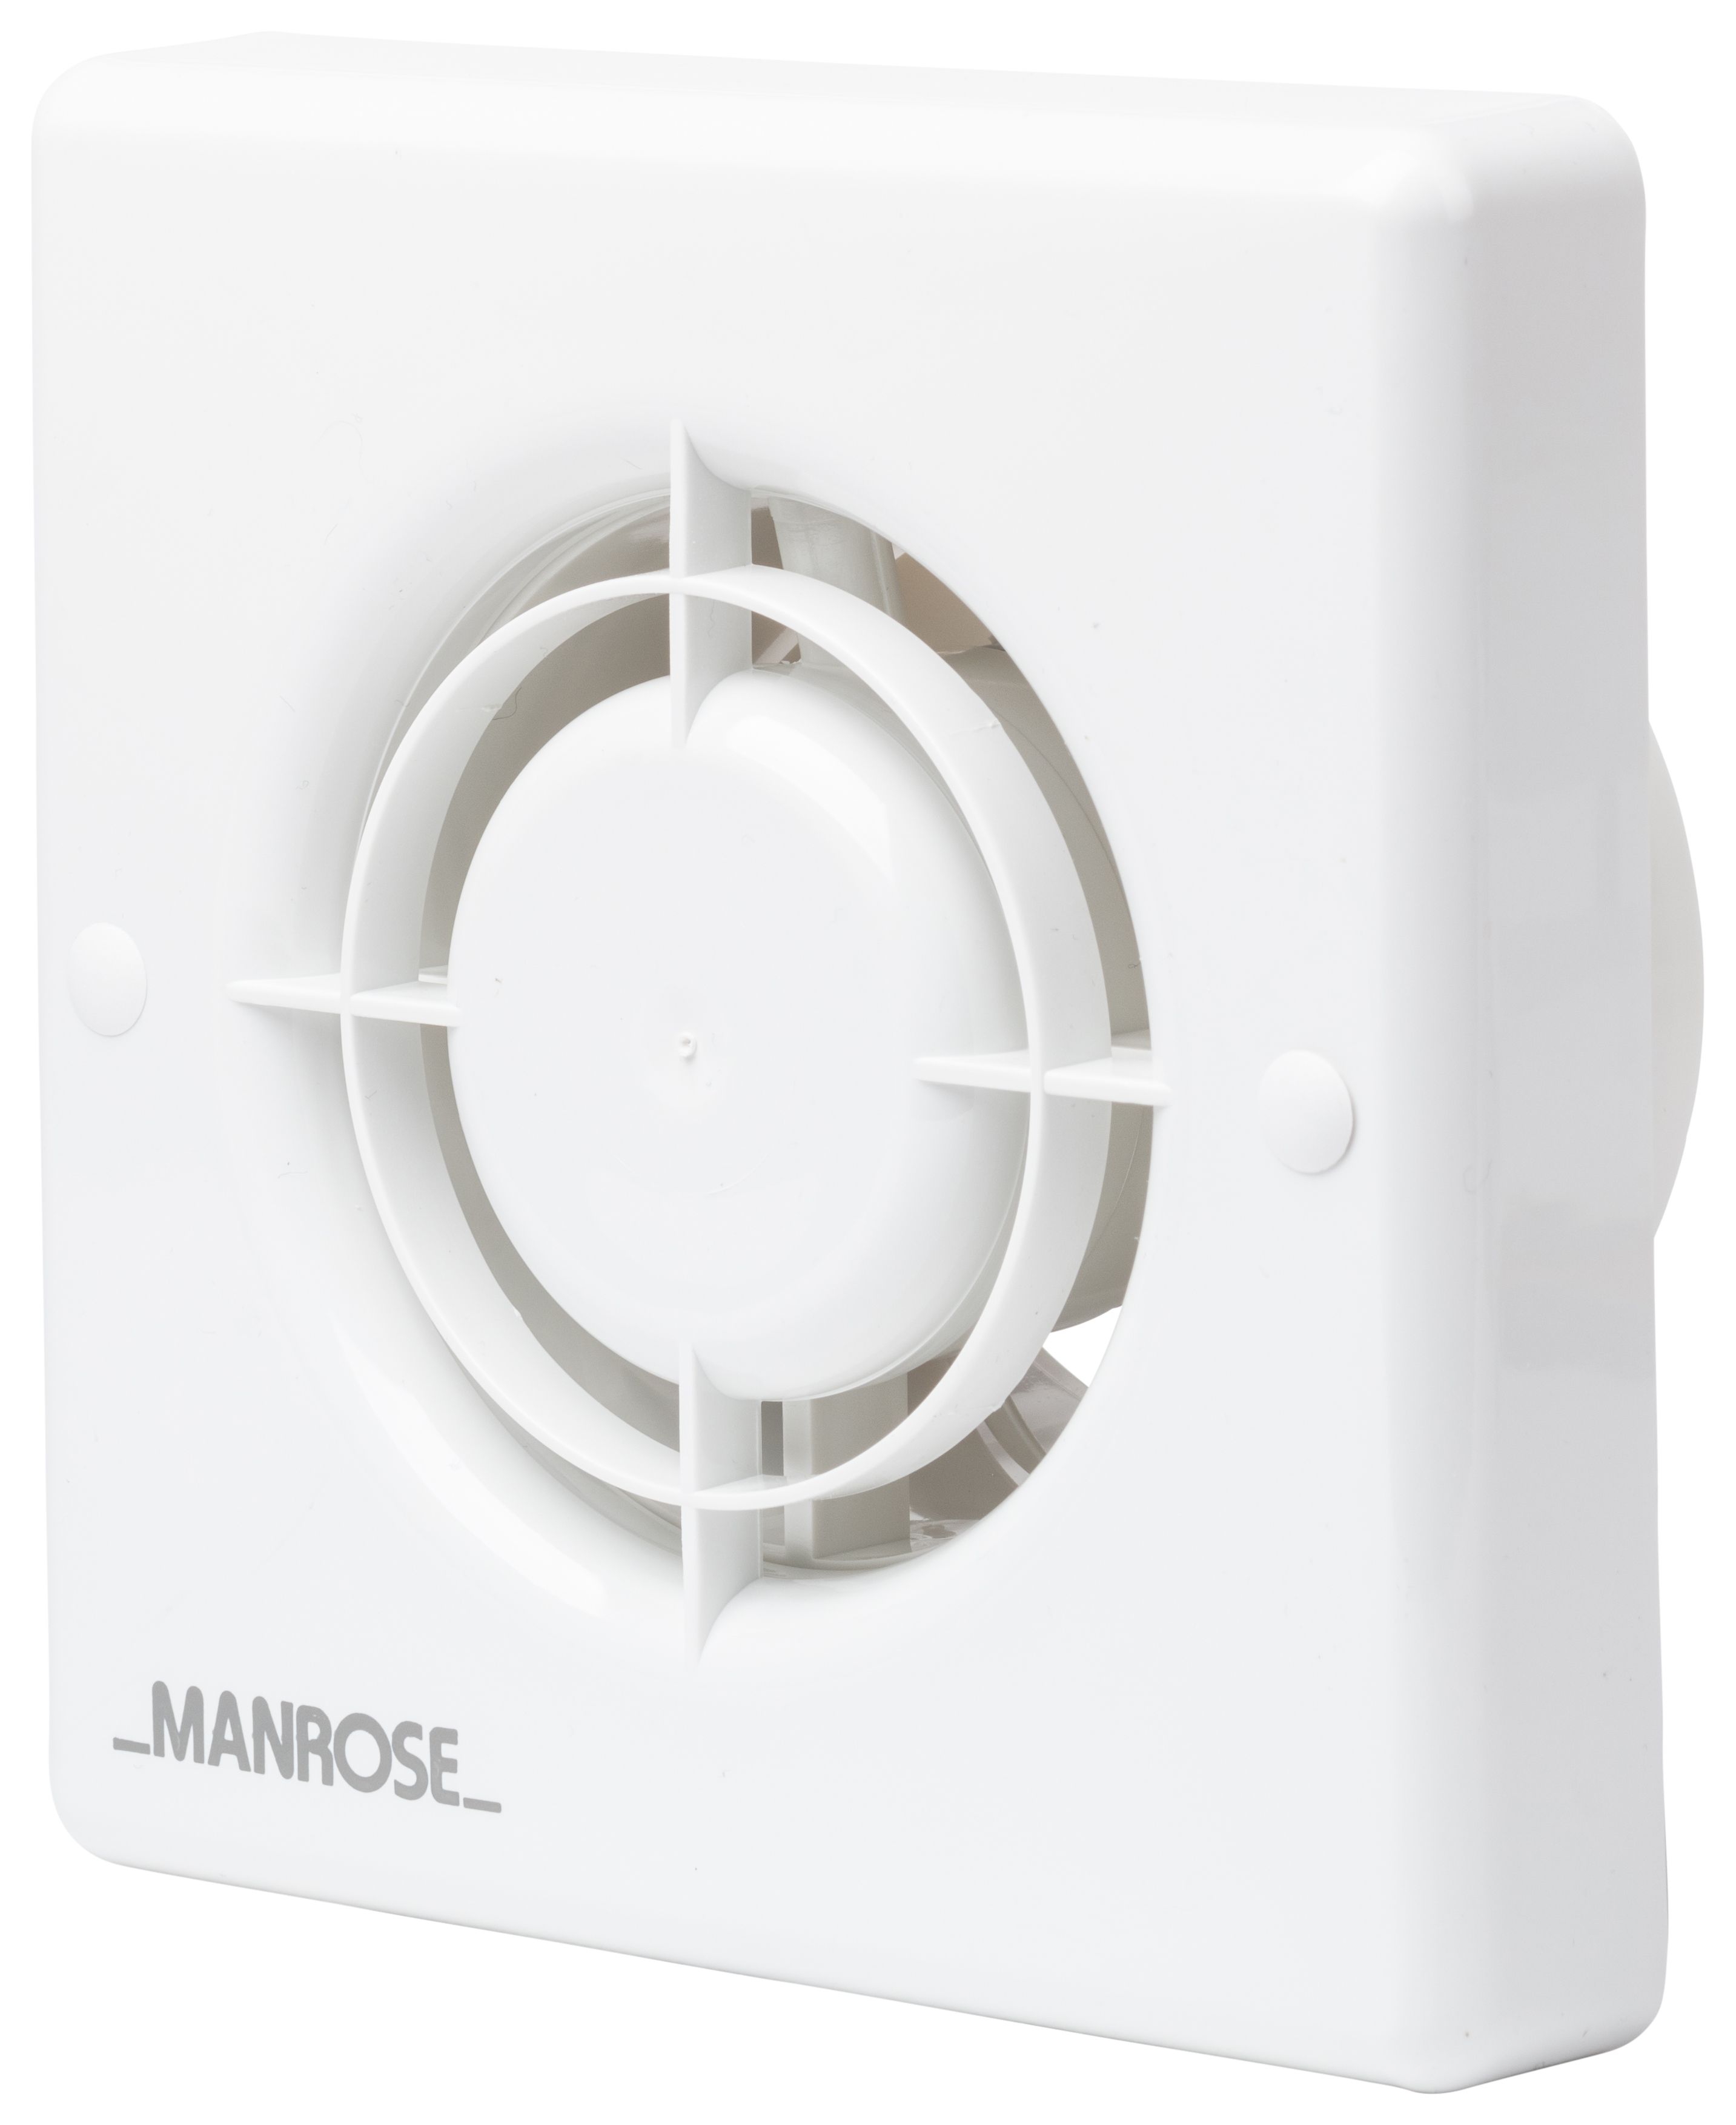 Image of Manrose White Slatted Bathroom Fan - 100mm